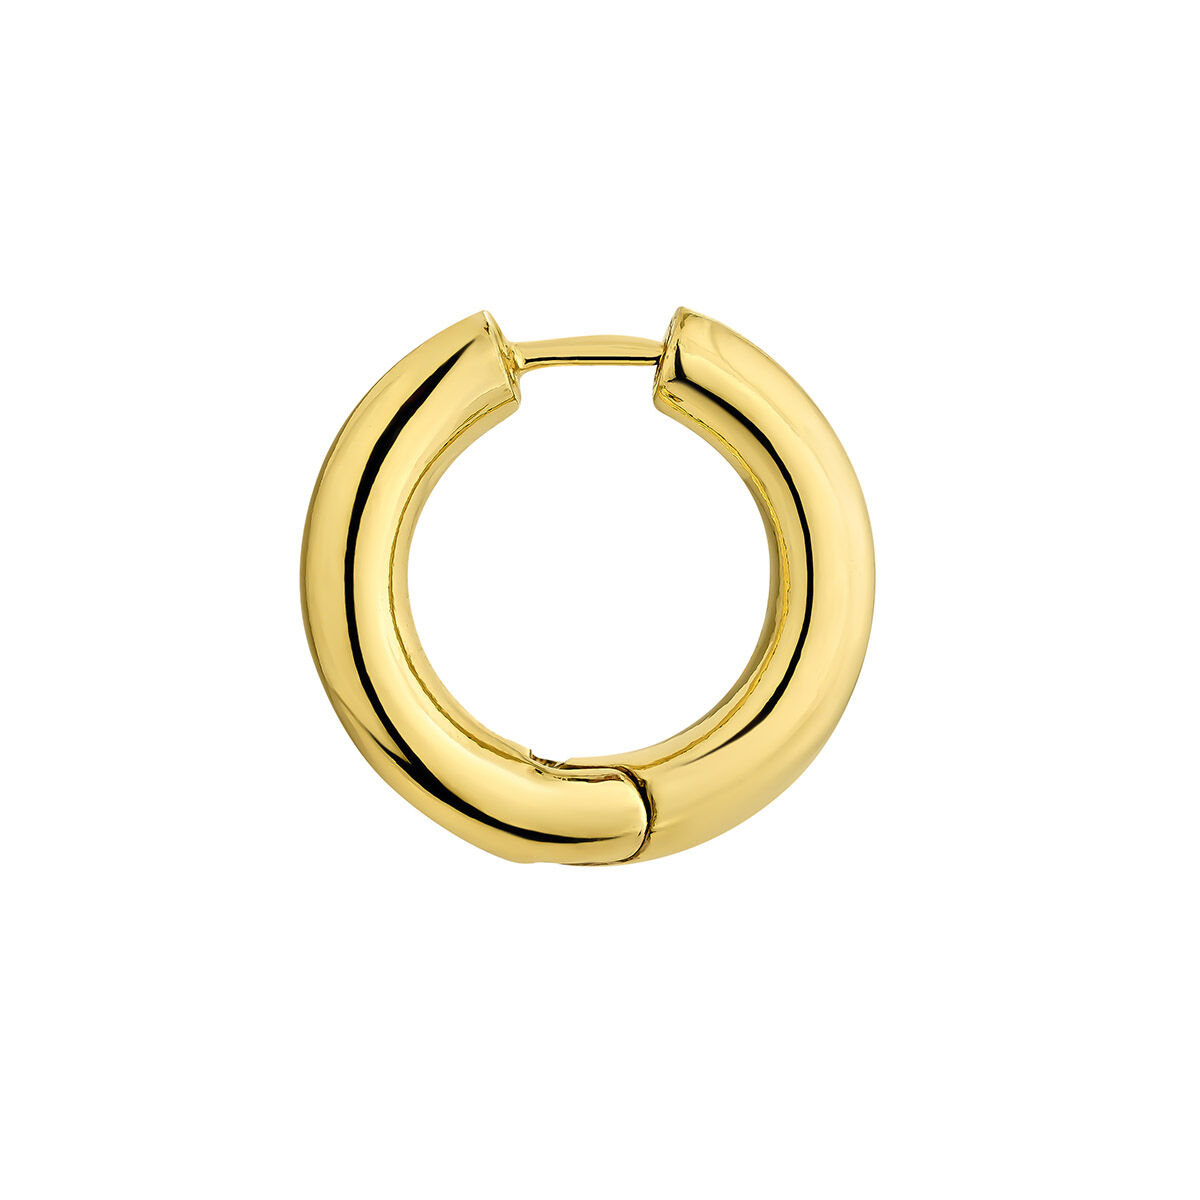 Medium hoop earrings in 18K yellow gold plated silver, J04751-02, hi-res